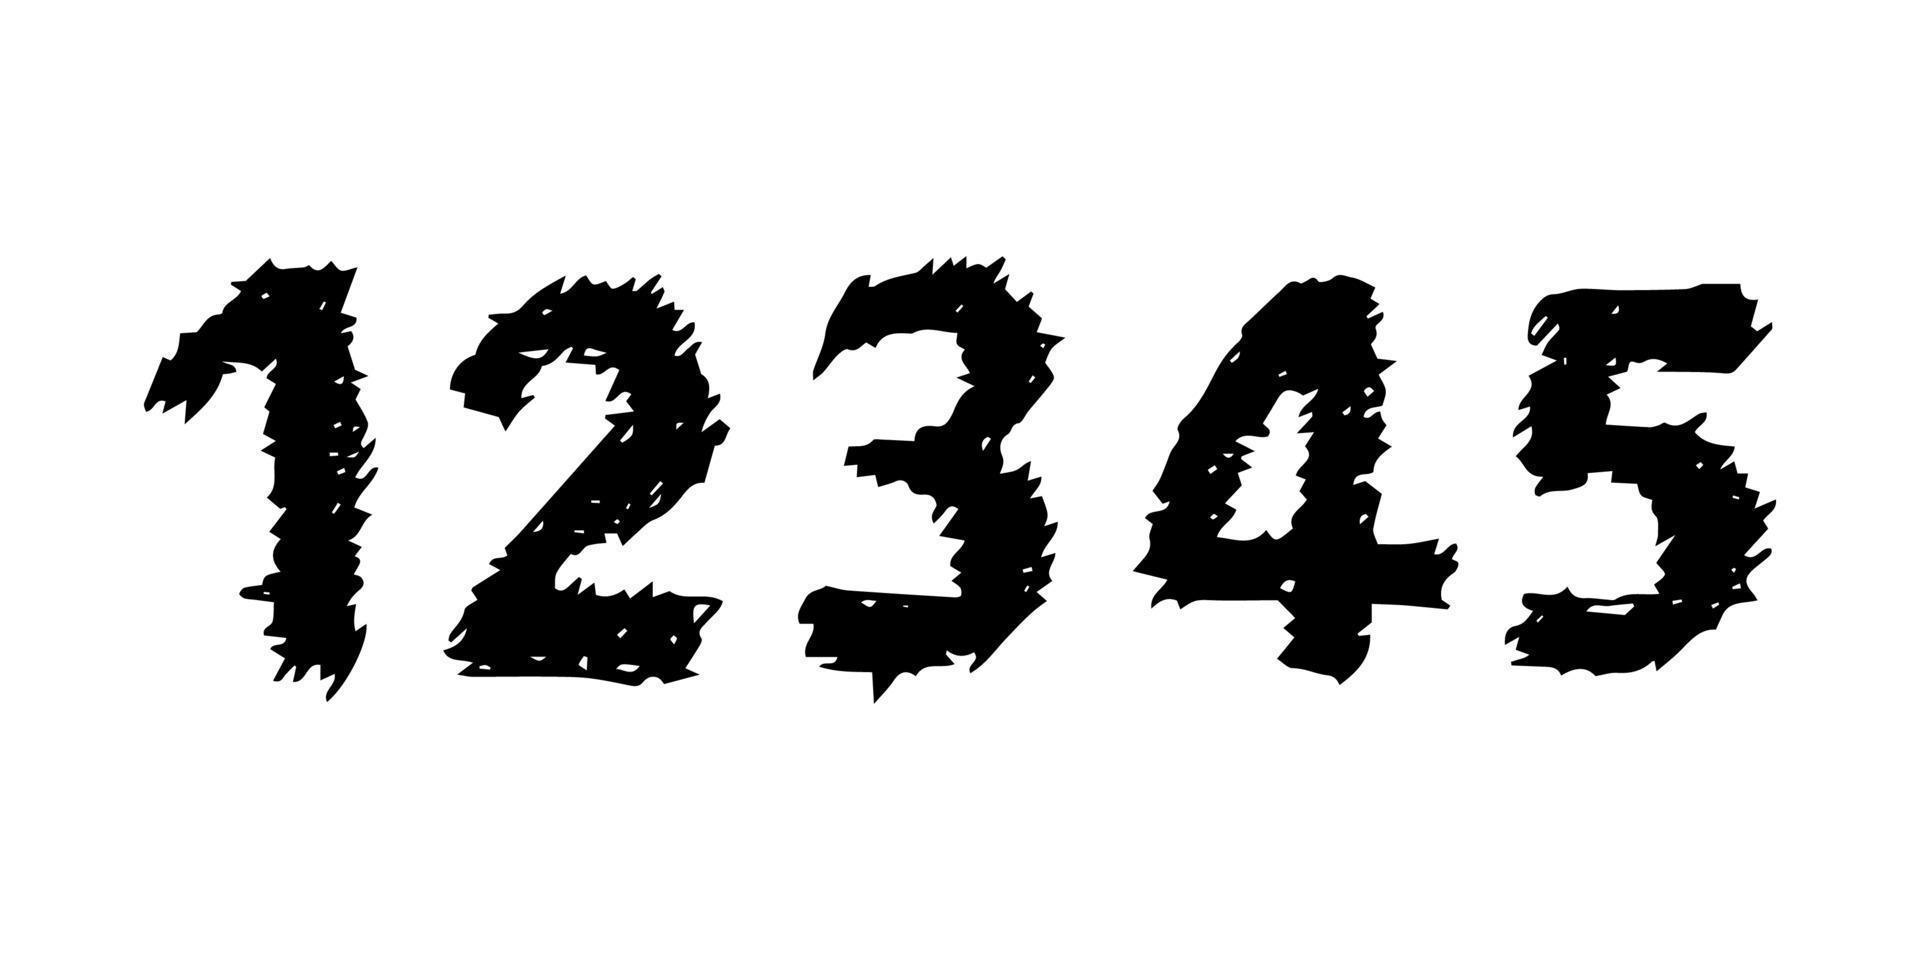 numéros dessinés à la main 12345. police et police modernes majuscules. symboles noirs sur fond blanc. illustration vectorielle. vecteur